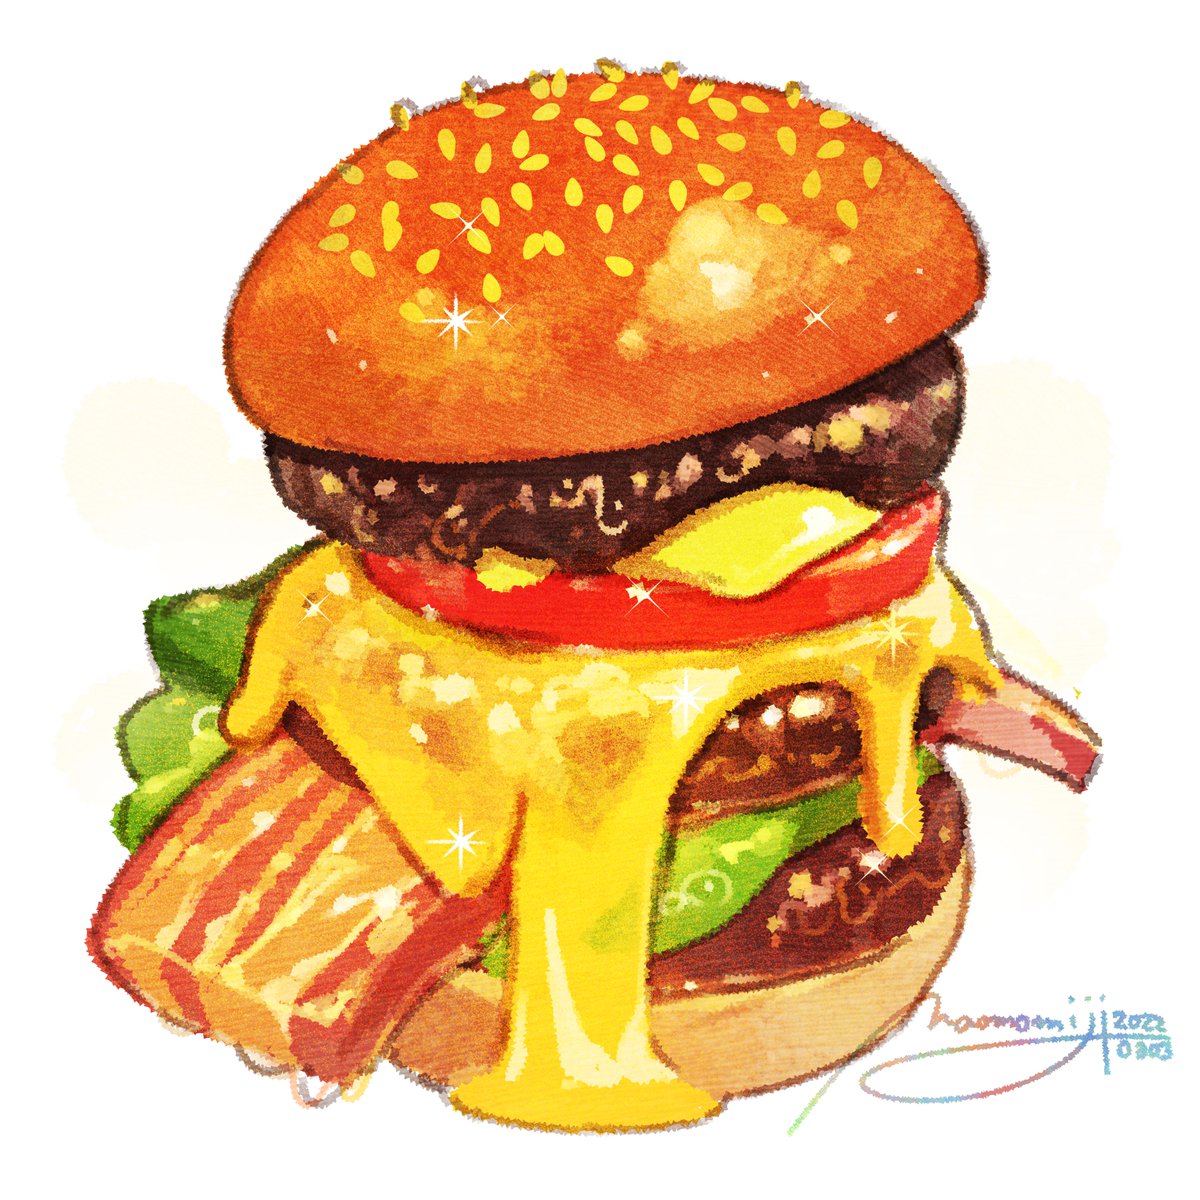 「【今日は #ハンバーガーの日!】もみじ真魚さん作、とっても美味しそうなハンバーガ」|株式会社ワコムのイラスト